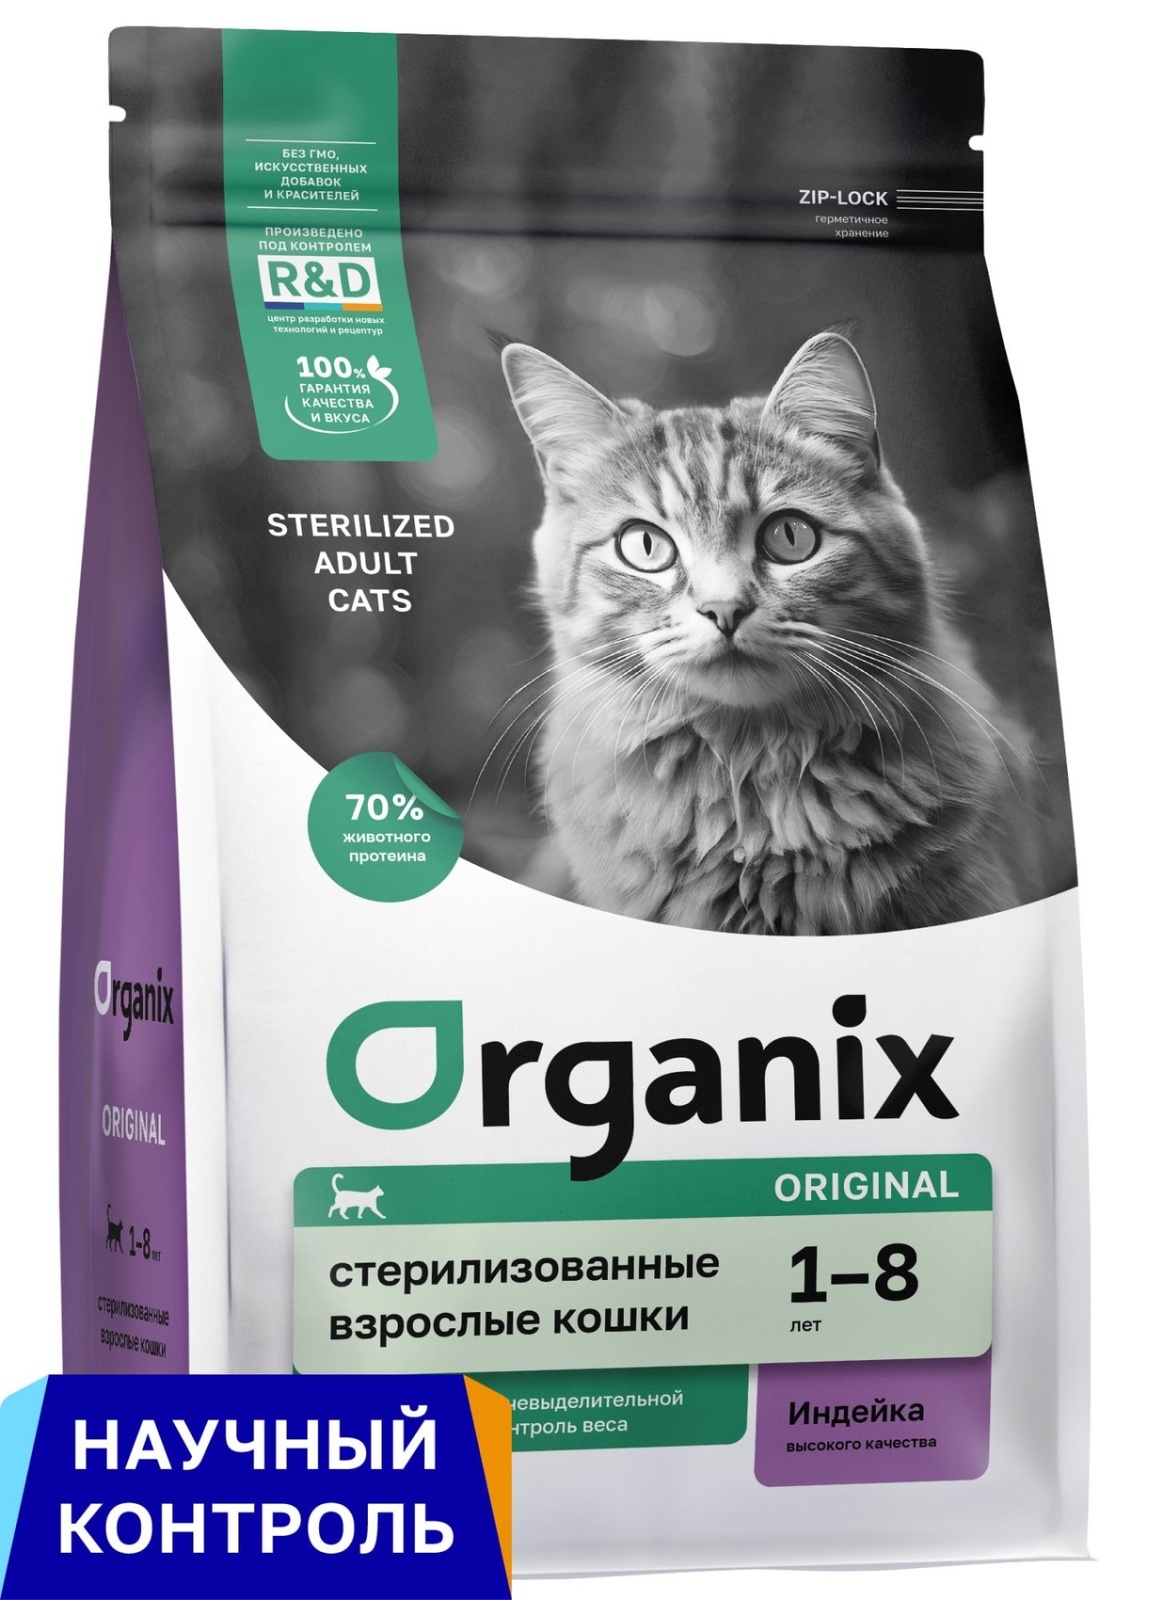 Organix Organix полнорационный сухой корм для стерилизованных кошек с индейкой, фруктами и овощами (5 кг) organix organix сухой корм для кошек с курочкой 7 5 кг